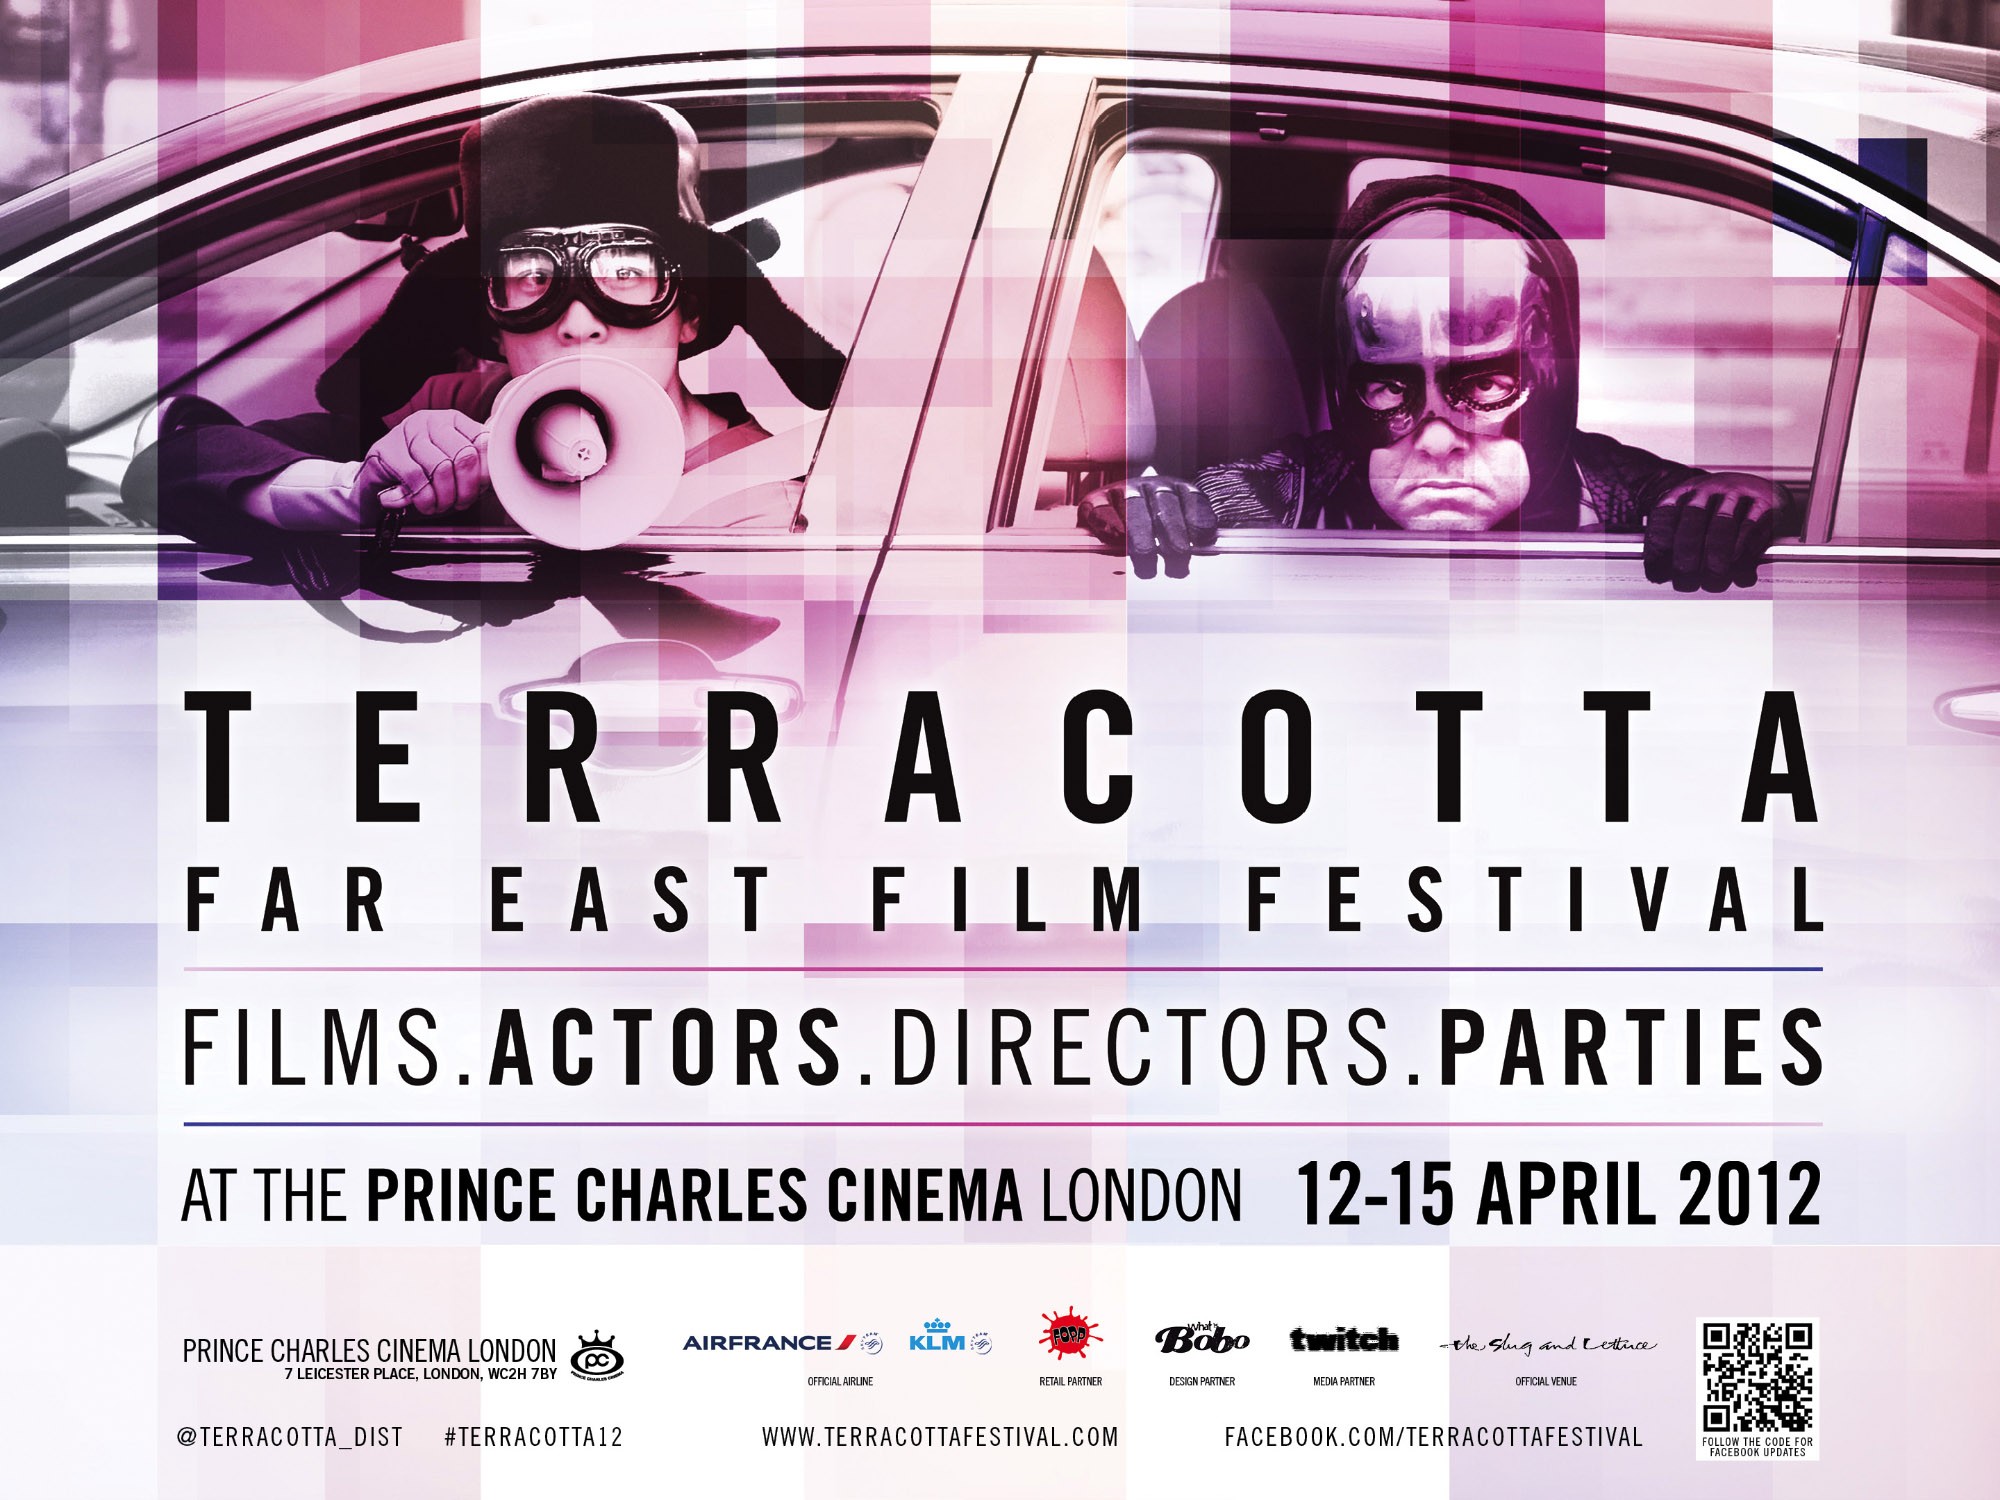 Mega Sized TV Poster Image for Terracotta Far East Film Festival  (#4 of 8)